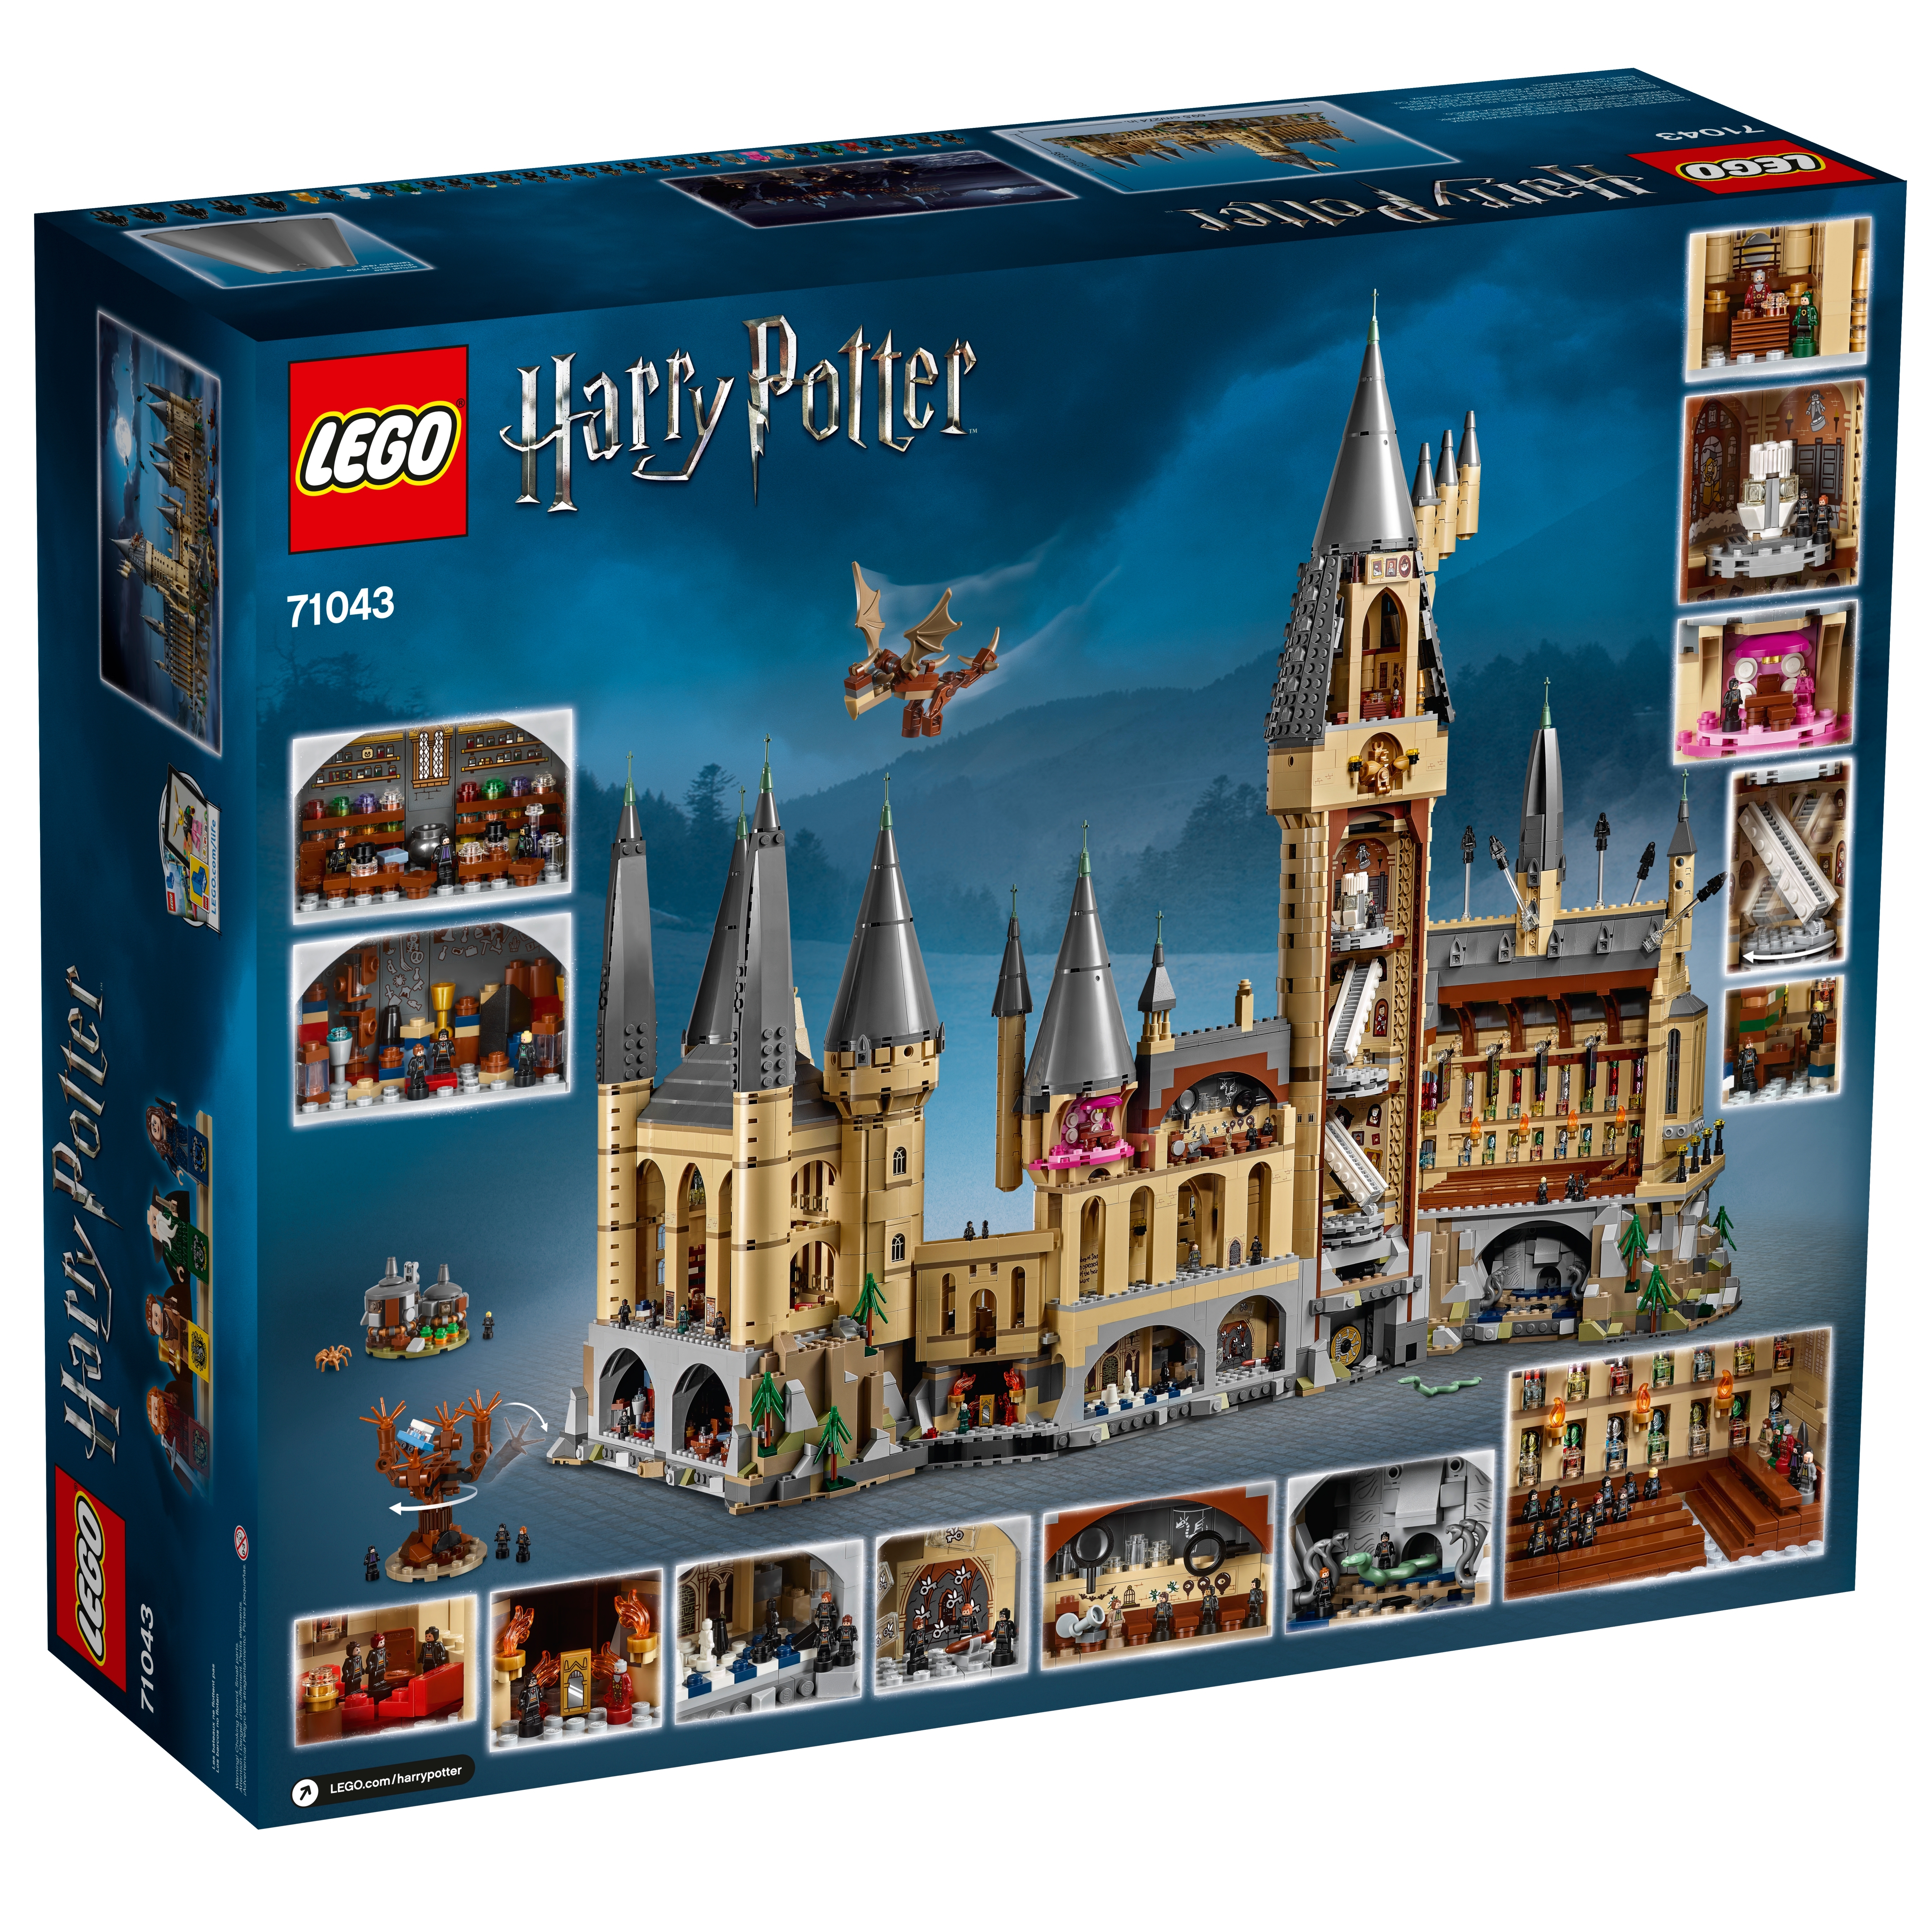 Hogwarts™ 71043 | Harry Potter™ | online at the Official LEGO® Shop DK